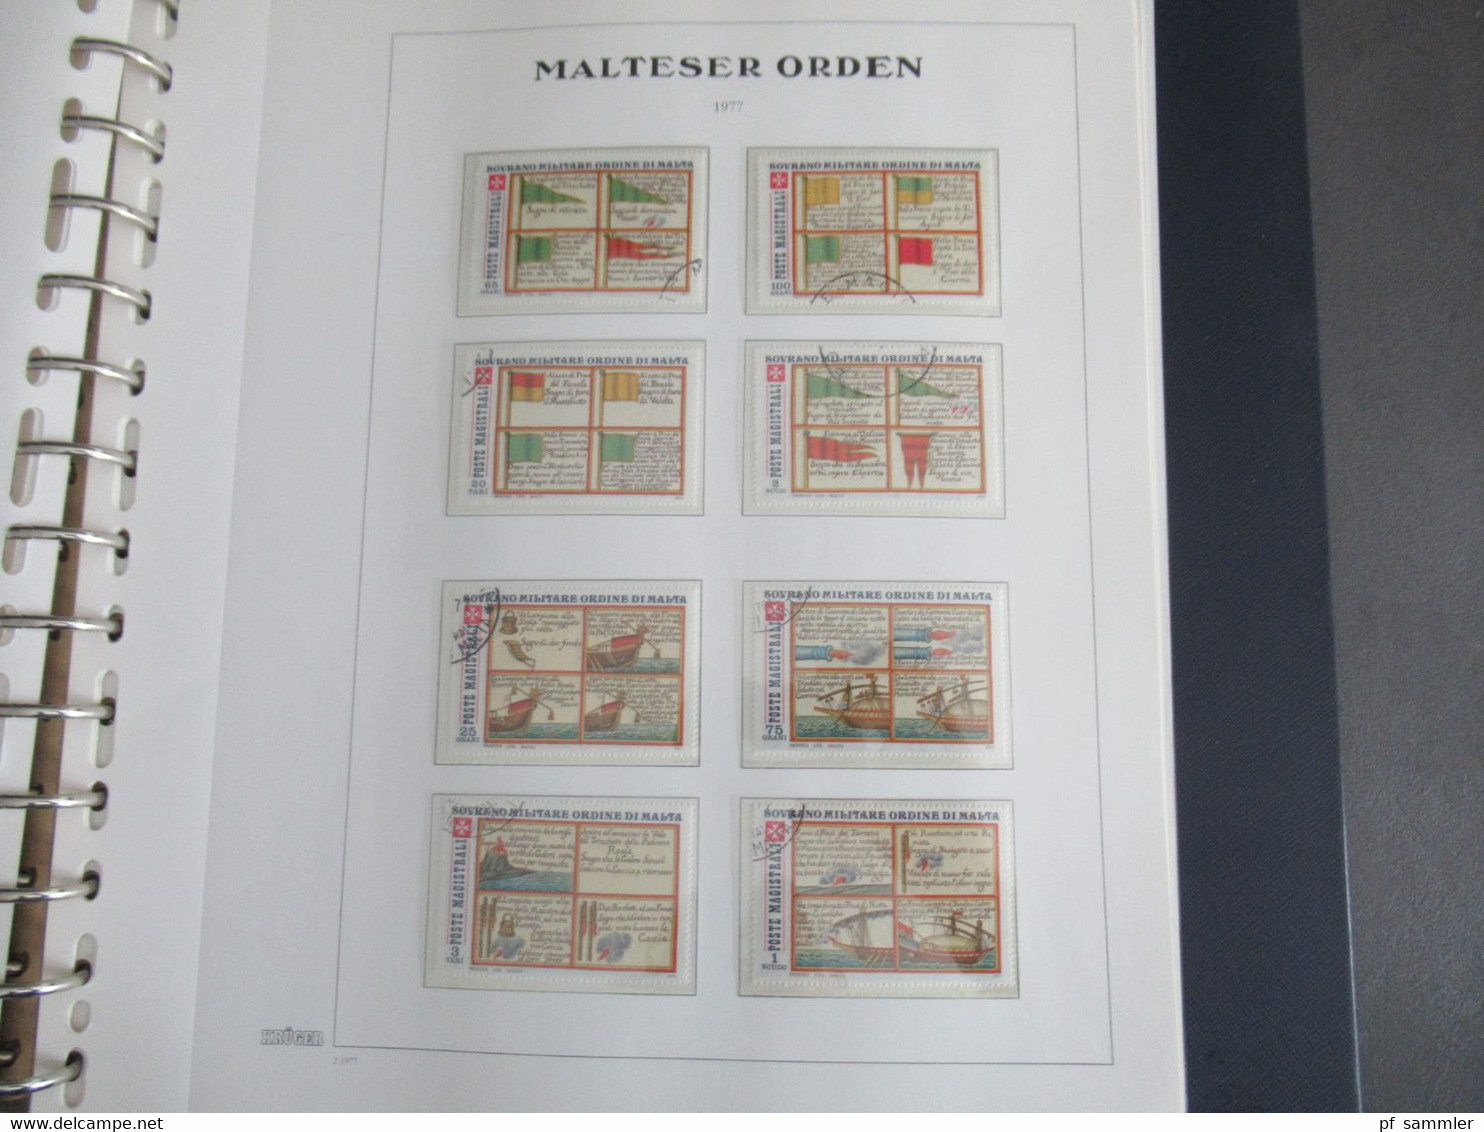 Sammlung Krüger VD Album Der Malteser Orden 1975 - 81 mit Portomarken doppelt geführt sauber ** und o. Viele Randstücke